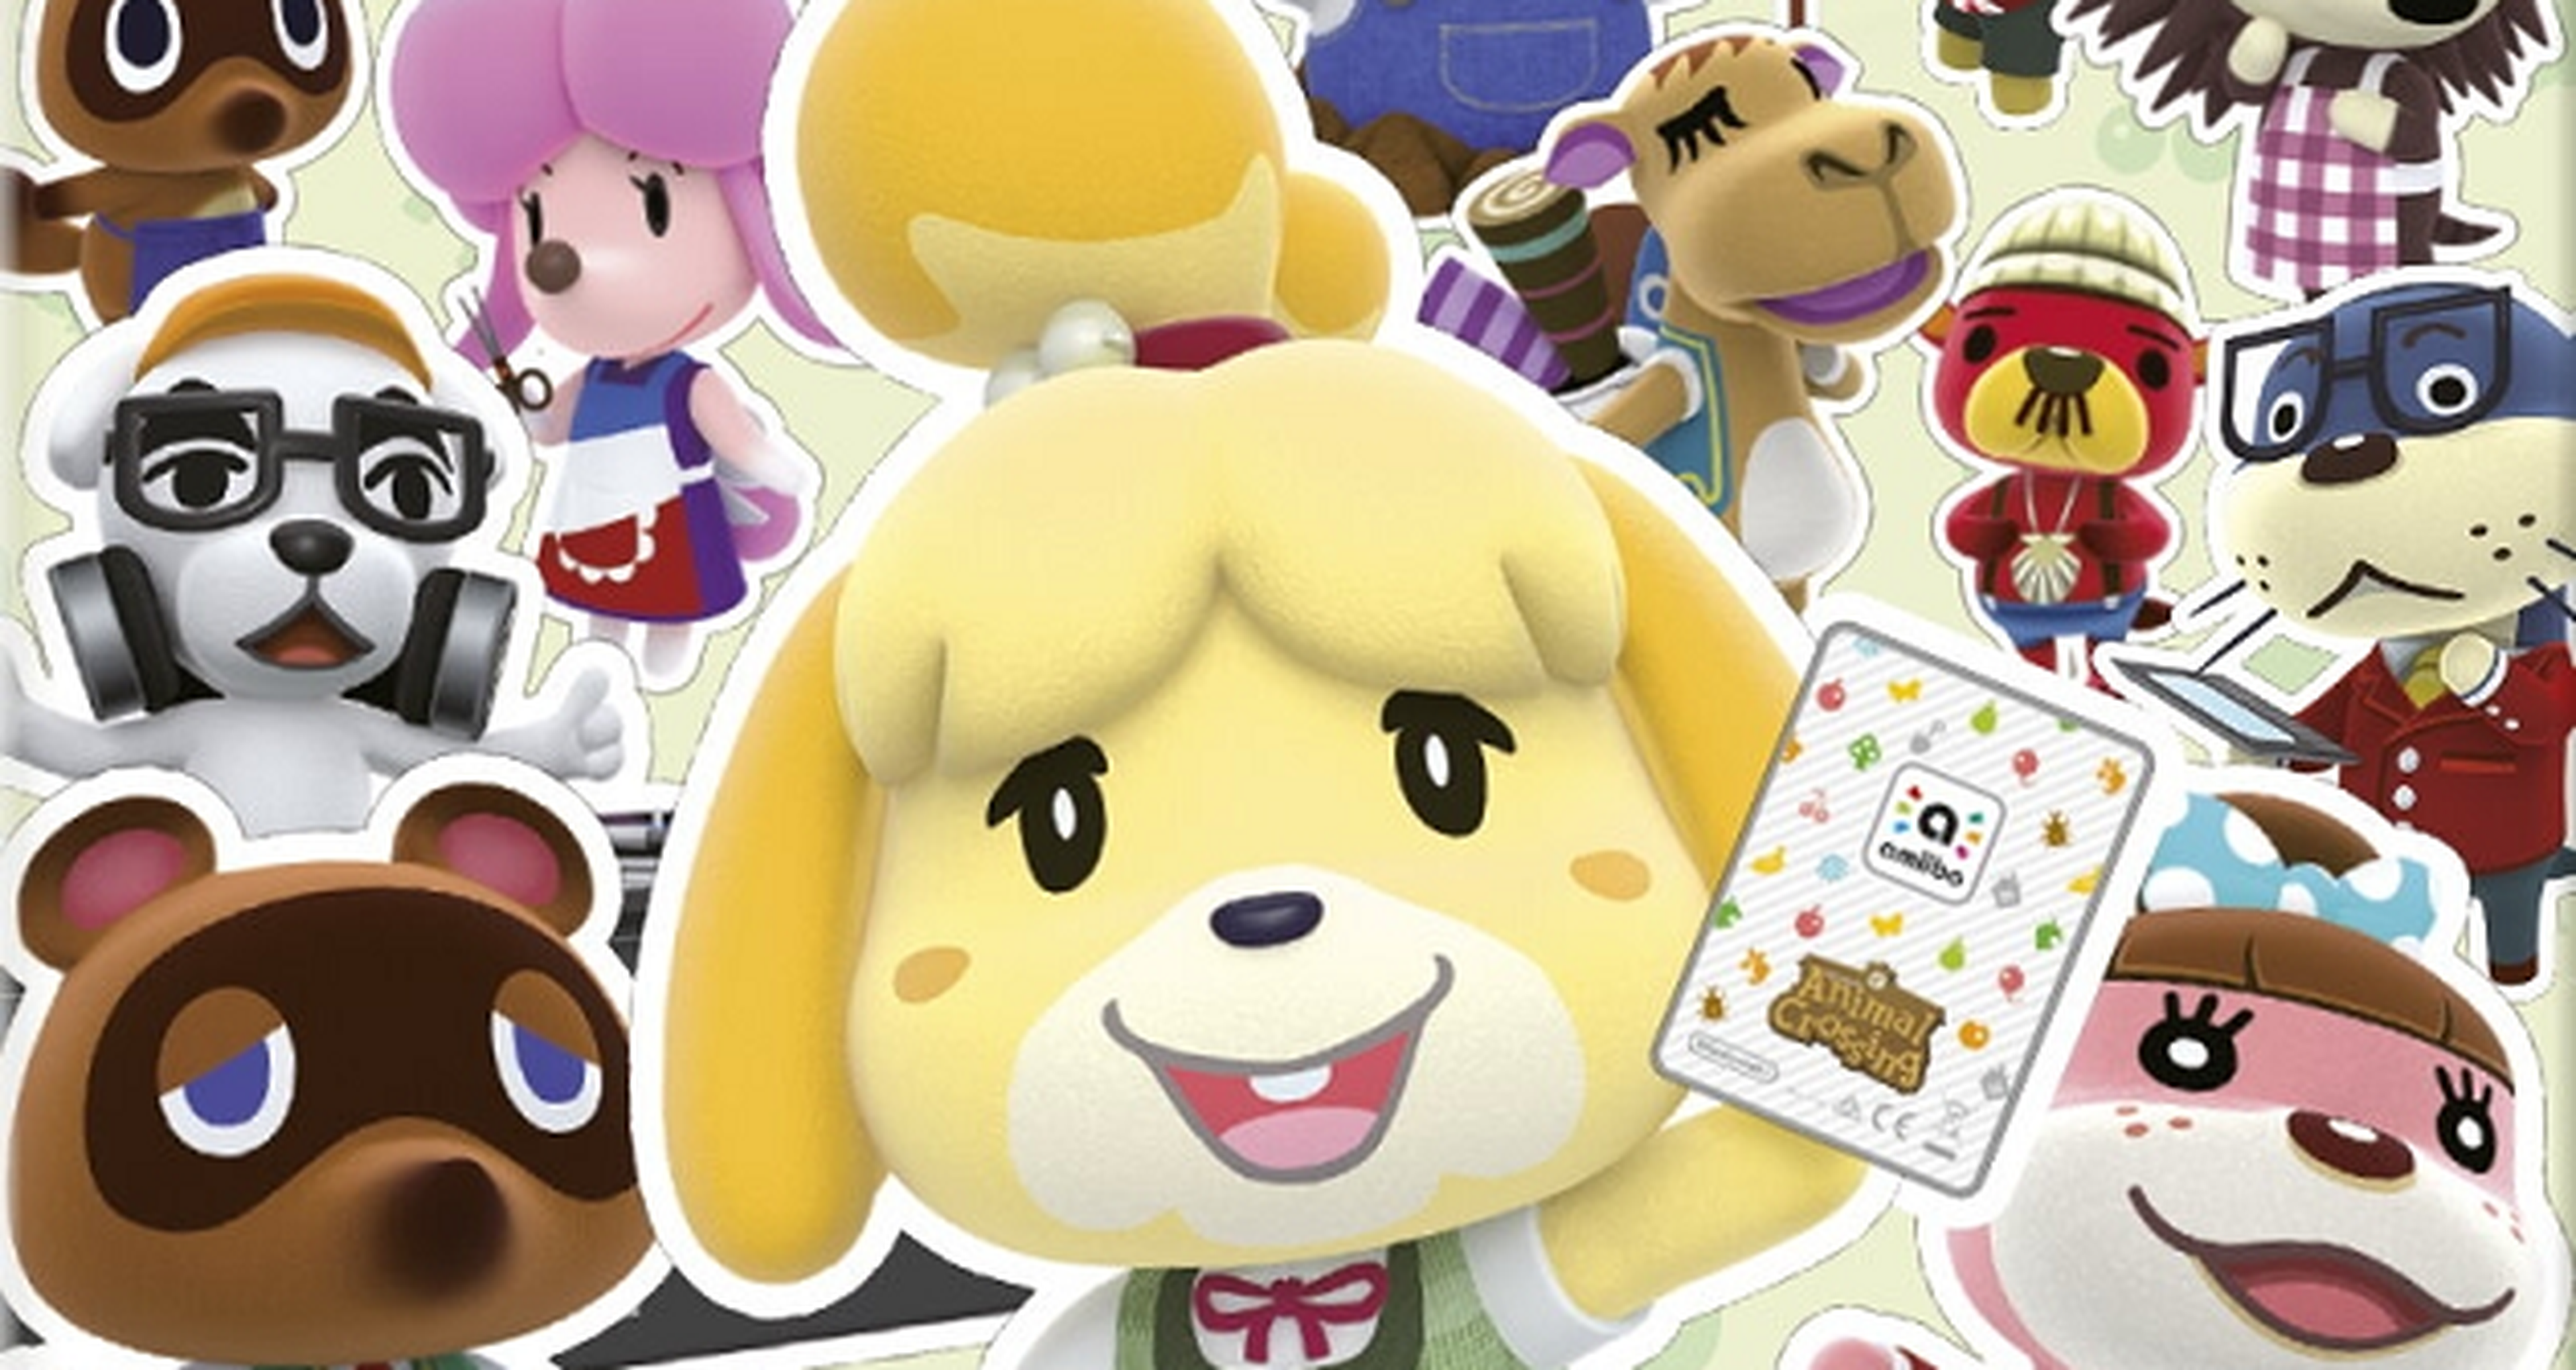 Cartas Amiibo de Animal Crossing, fecha de lanzamiento y galería de imágenes